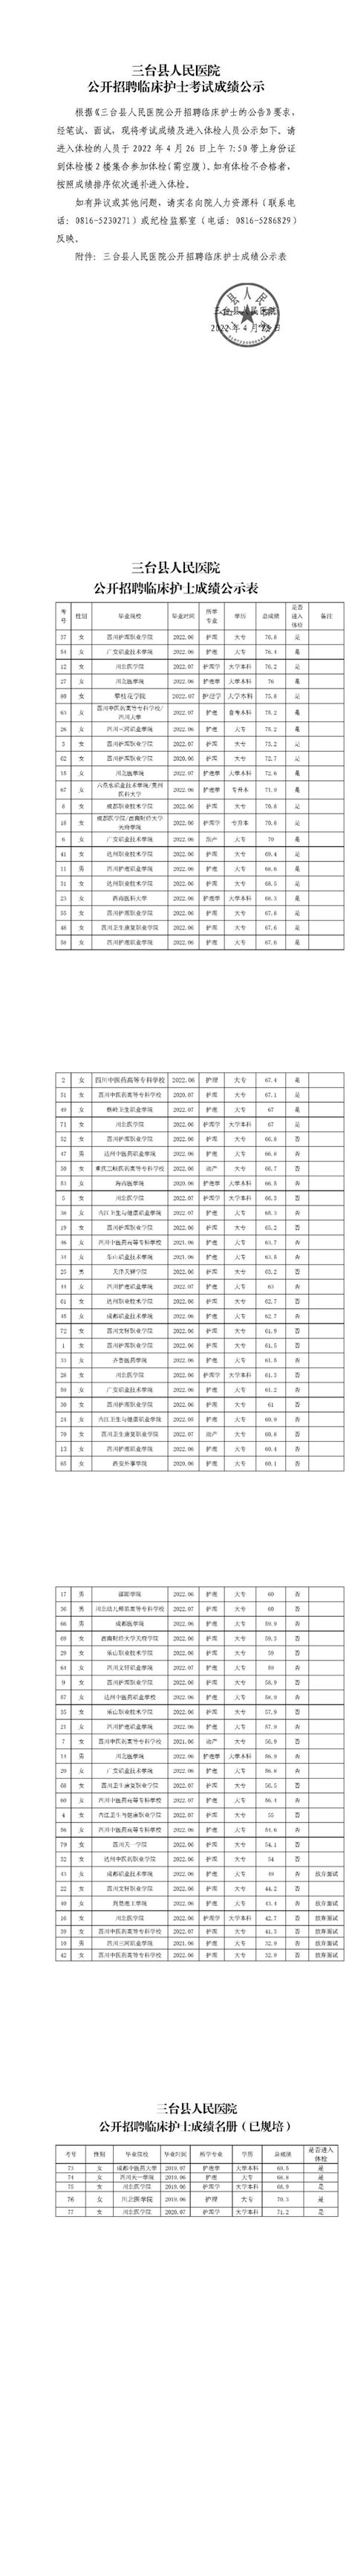 三台县人民医院公开招聘临床护士考试成绩公示_三台县人民医院